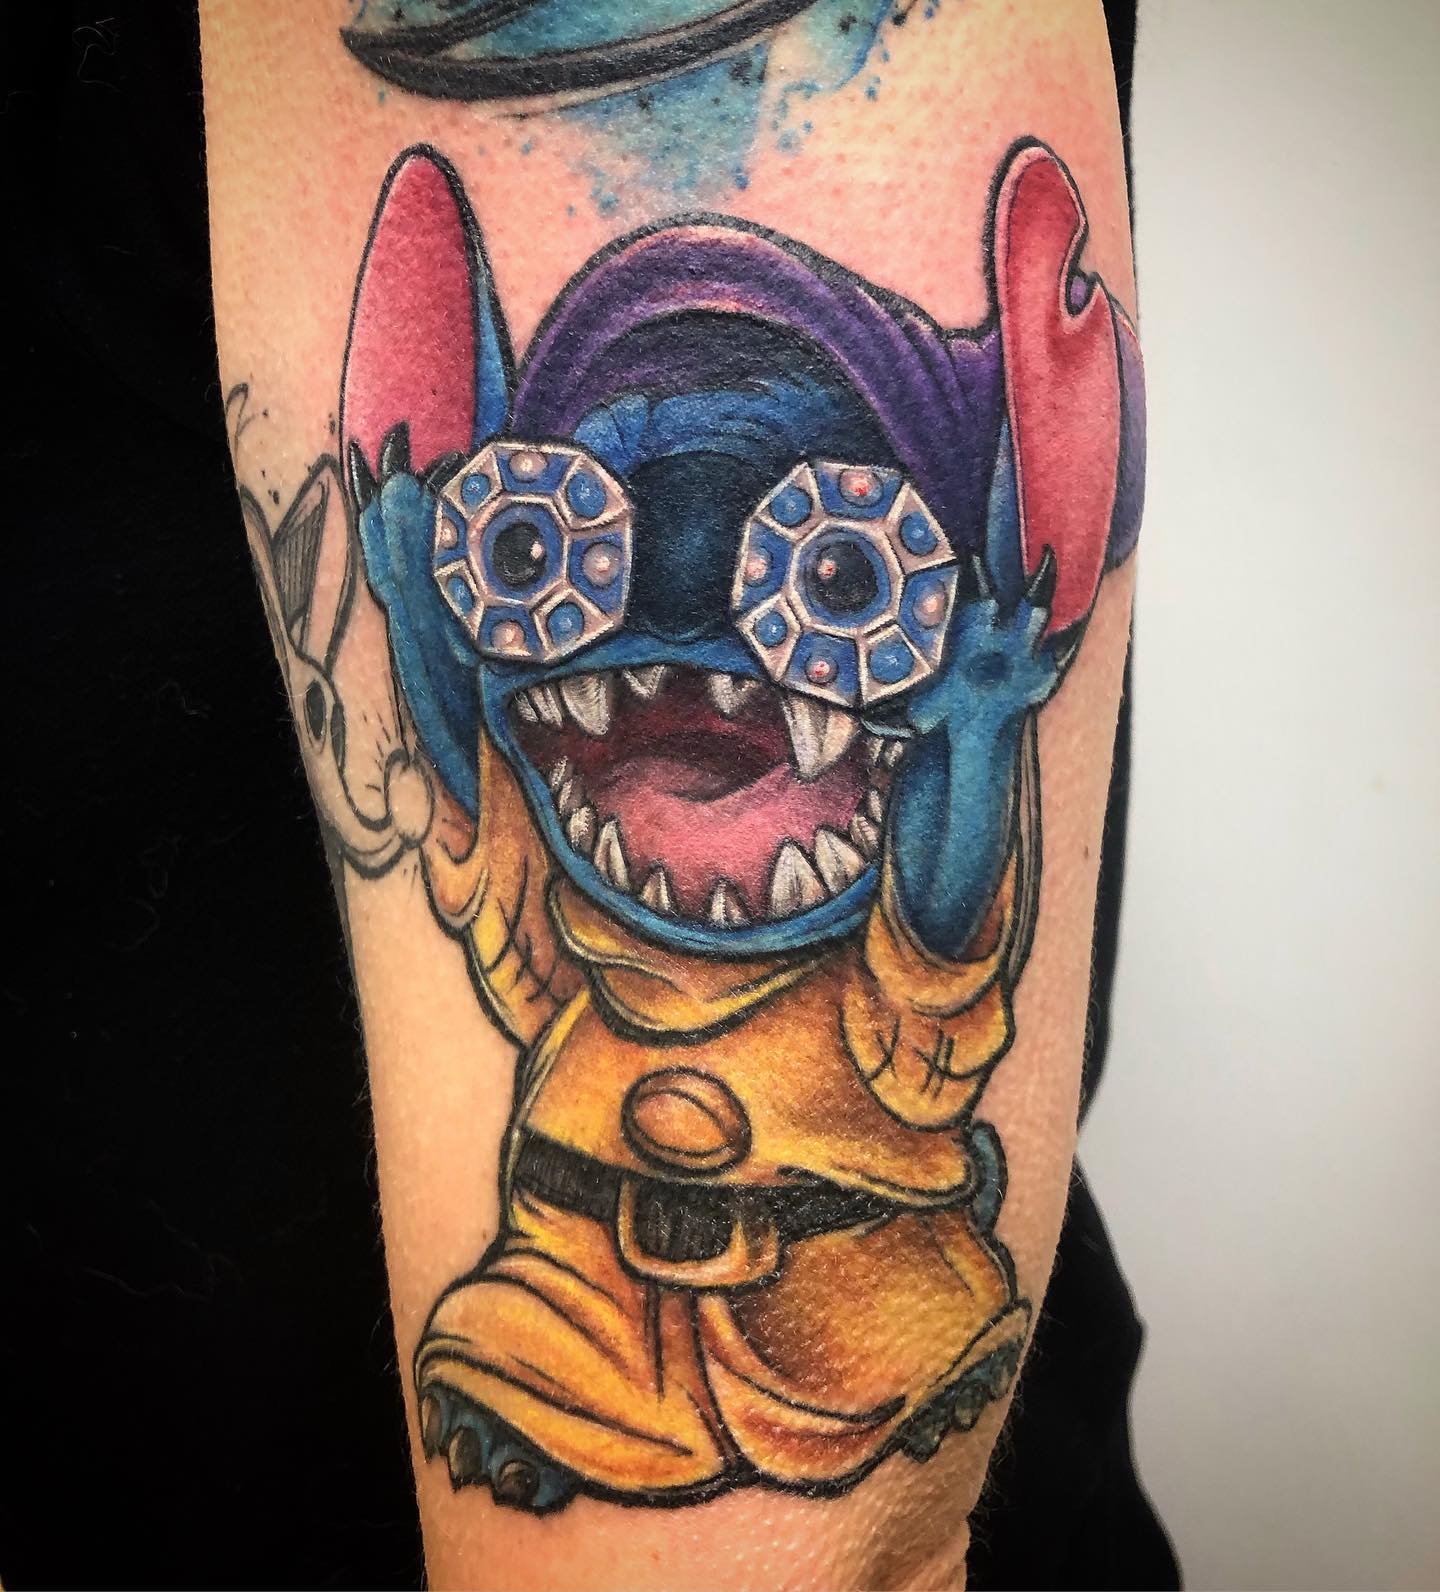 Tatuaje de Stitch divertido y extravagante